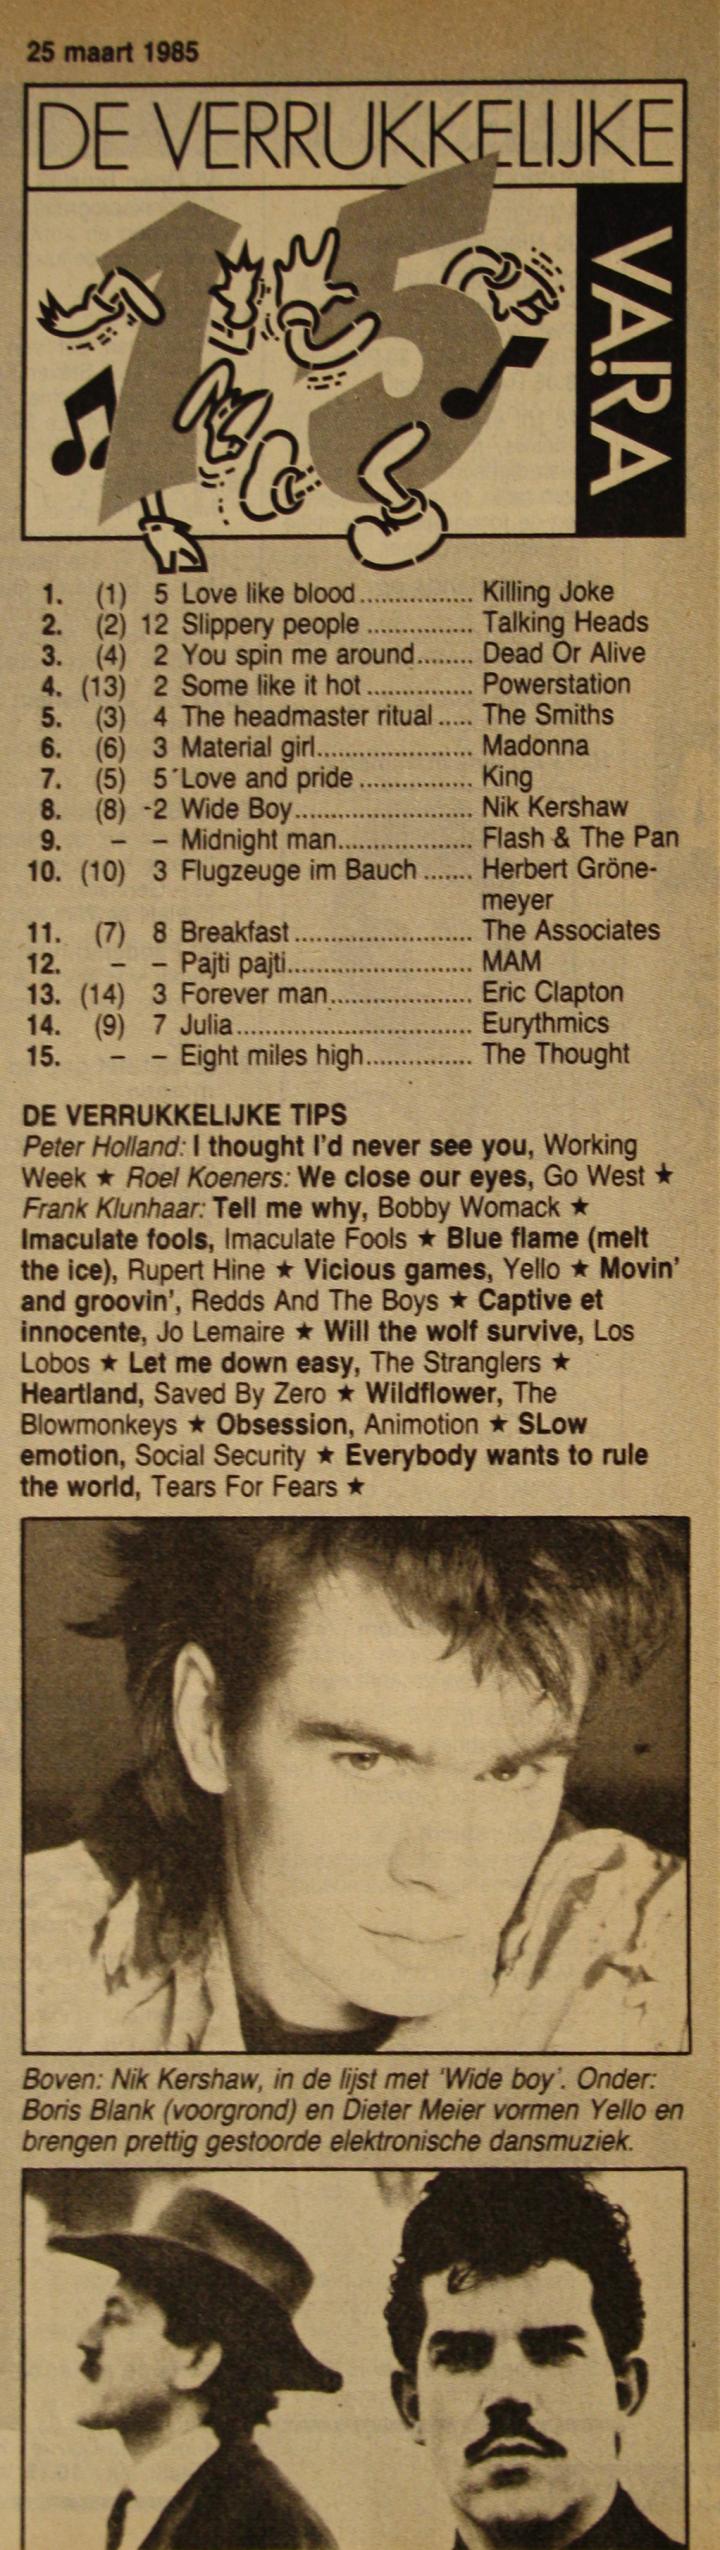 De Verrukkelijke 15 van 26 maart 1985